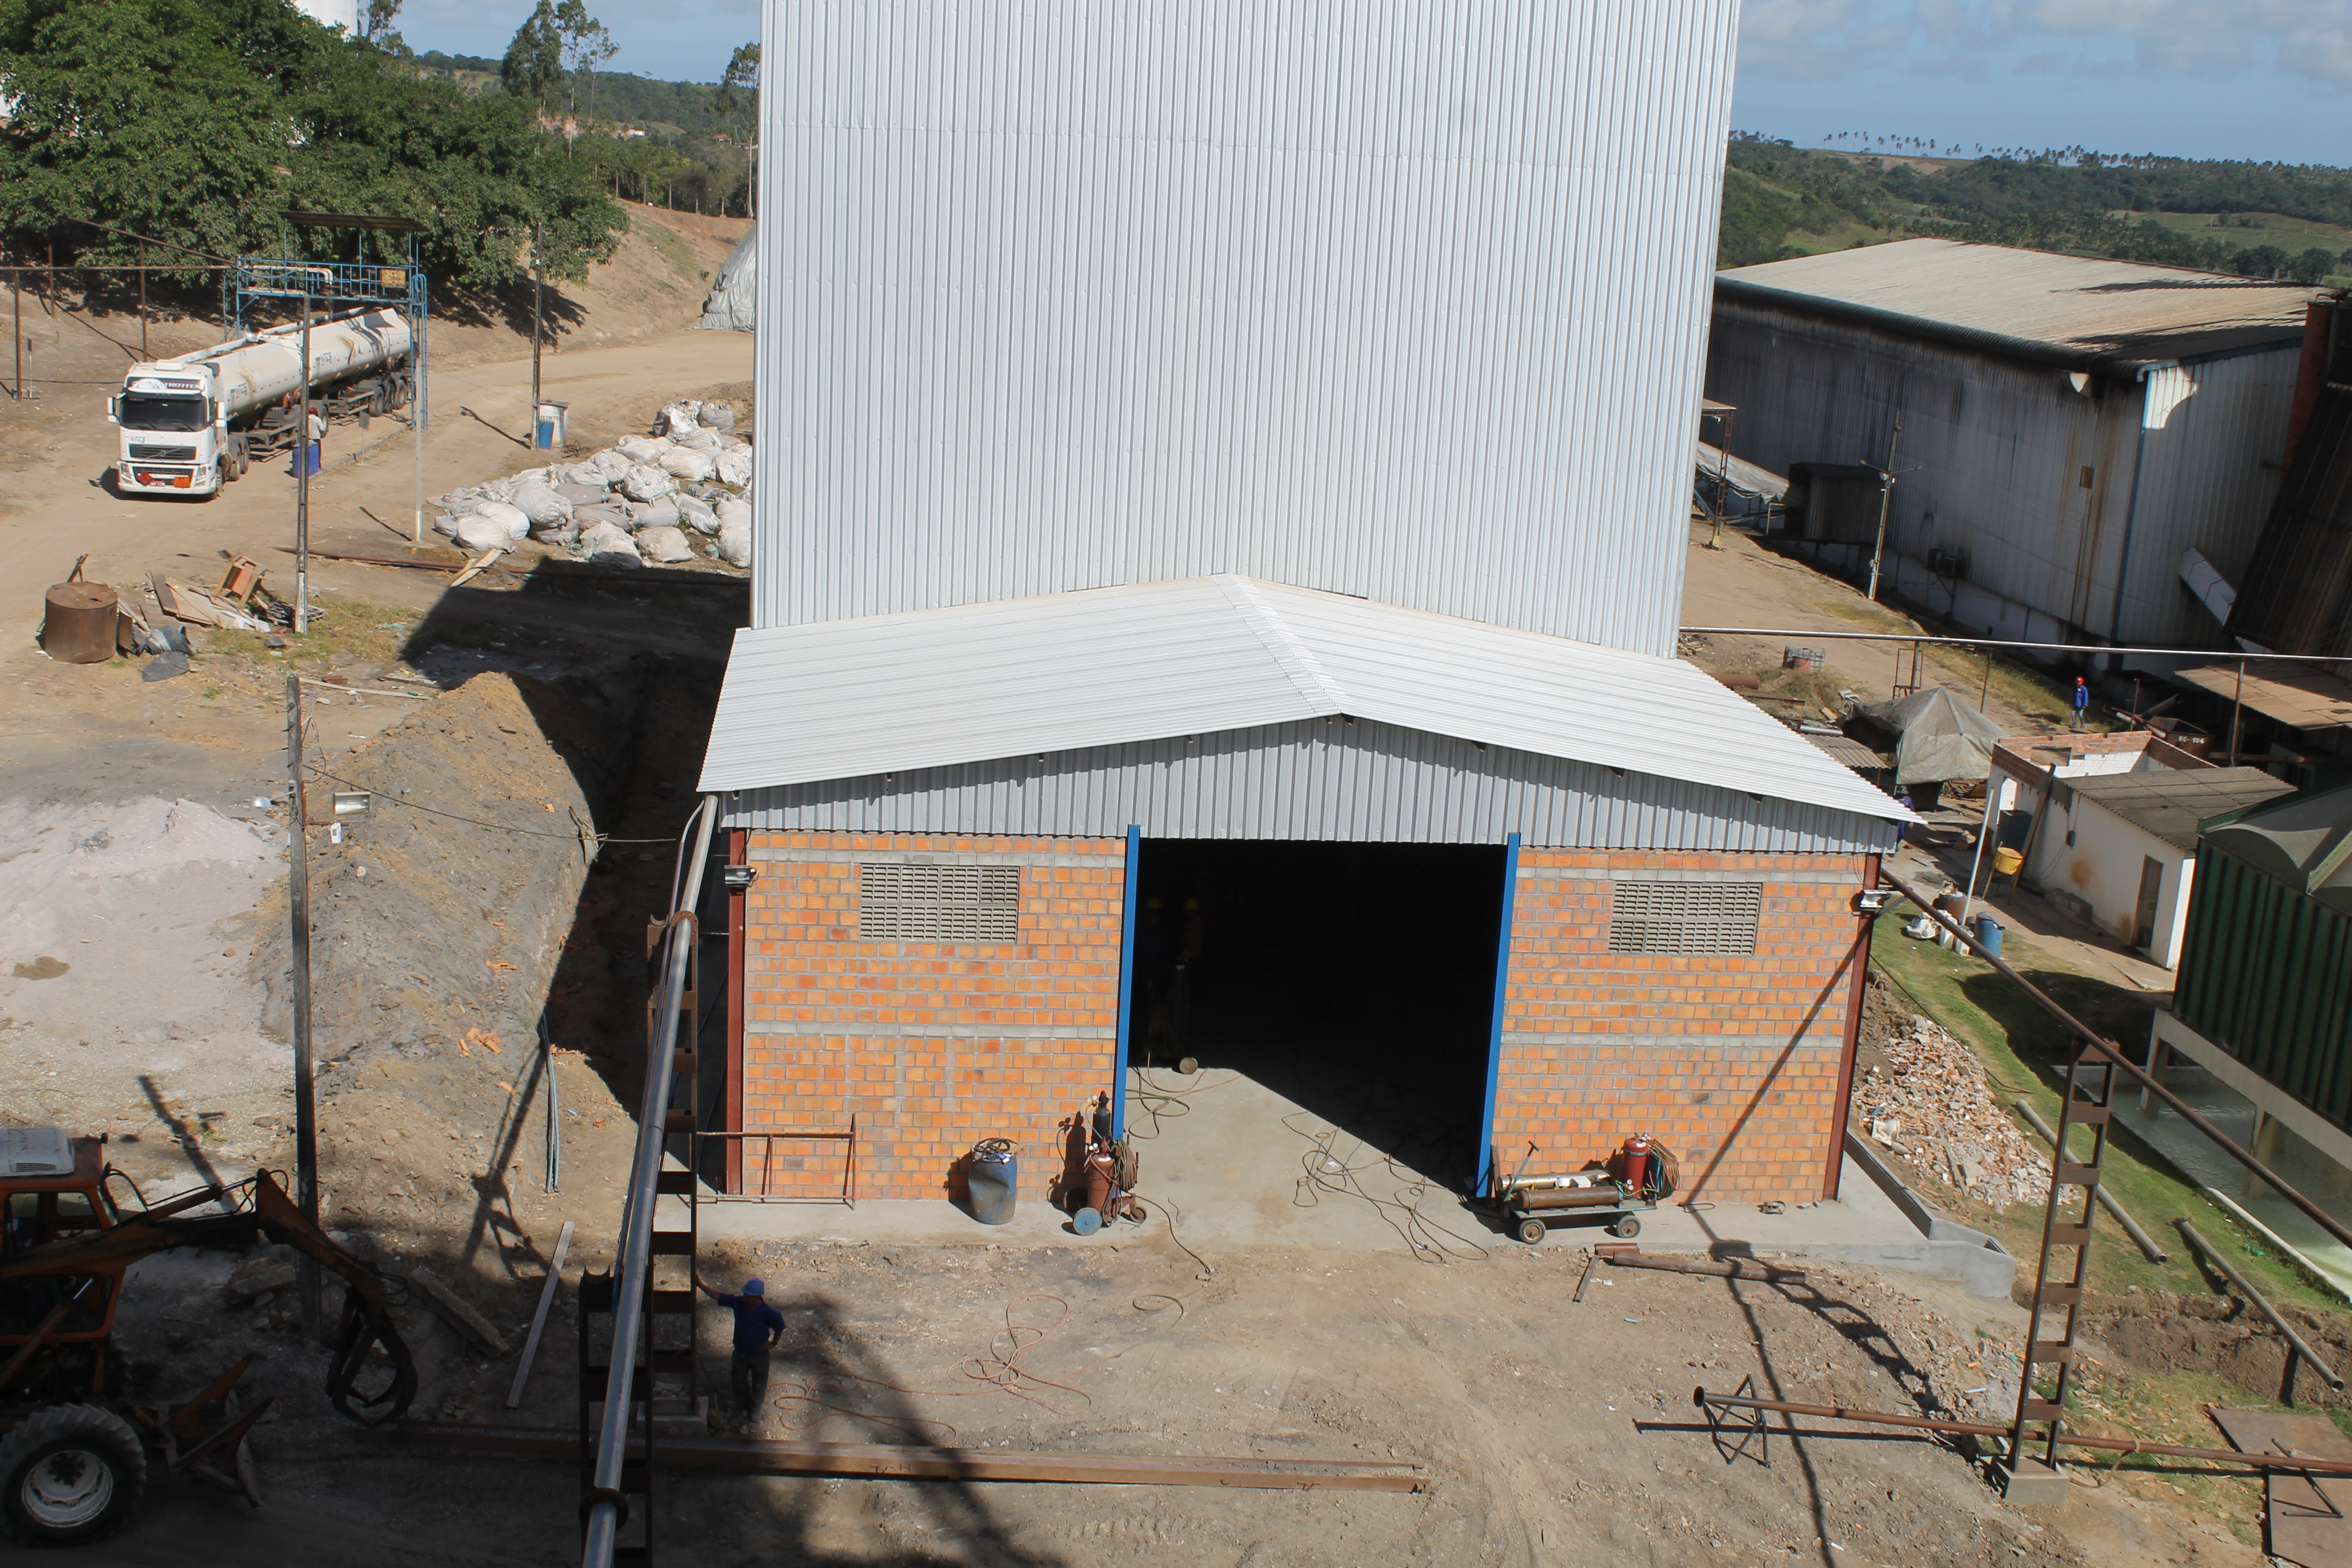 Projeto da indústria de secagem de leveduras avança em Pindorama